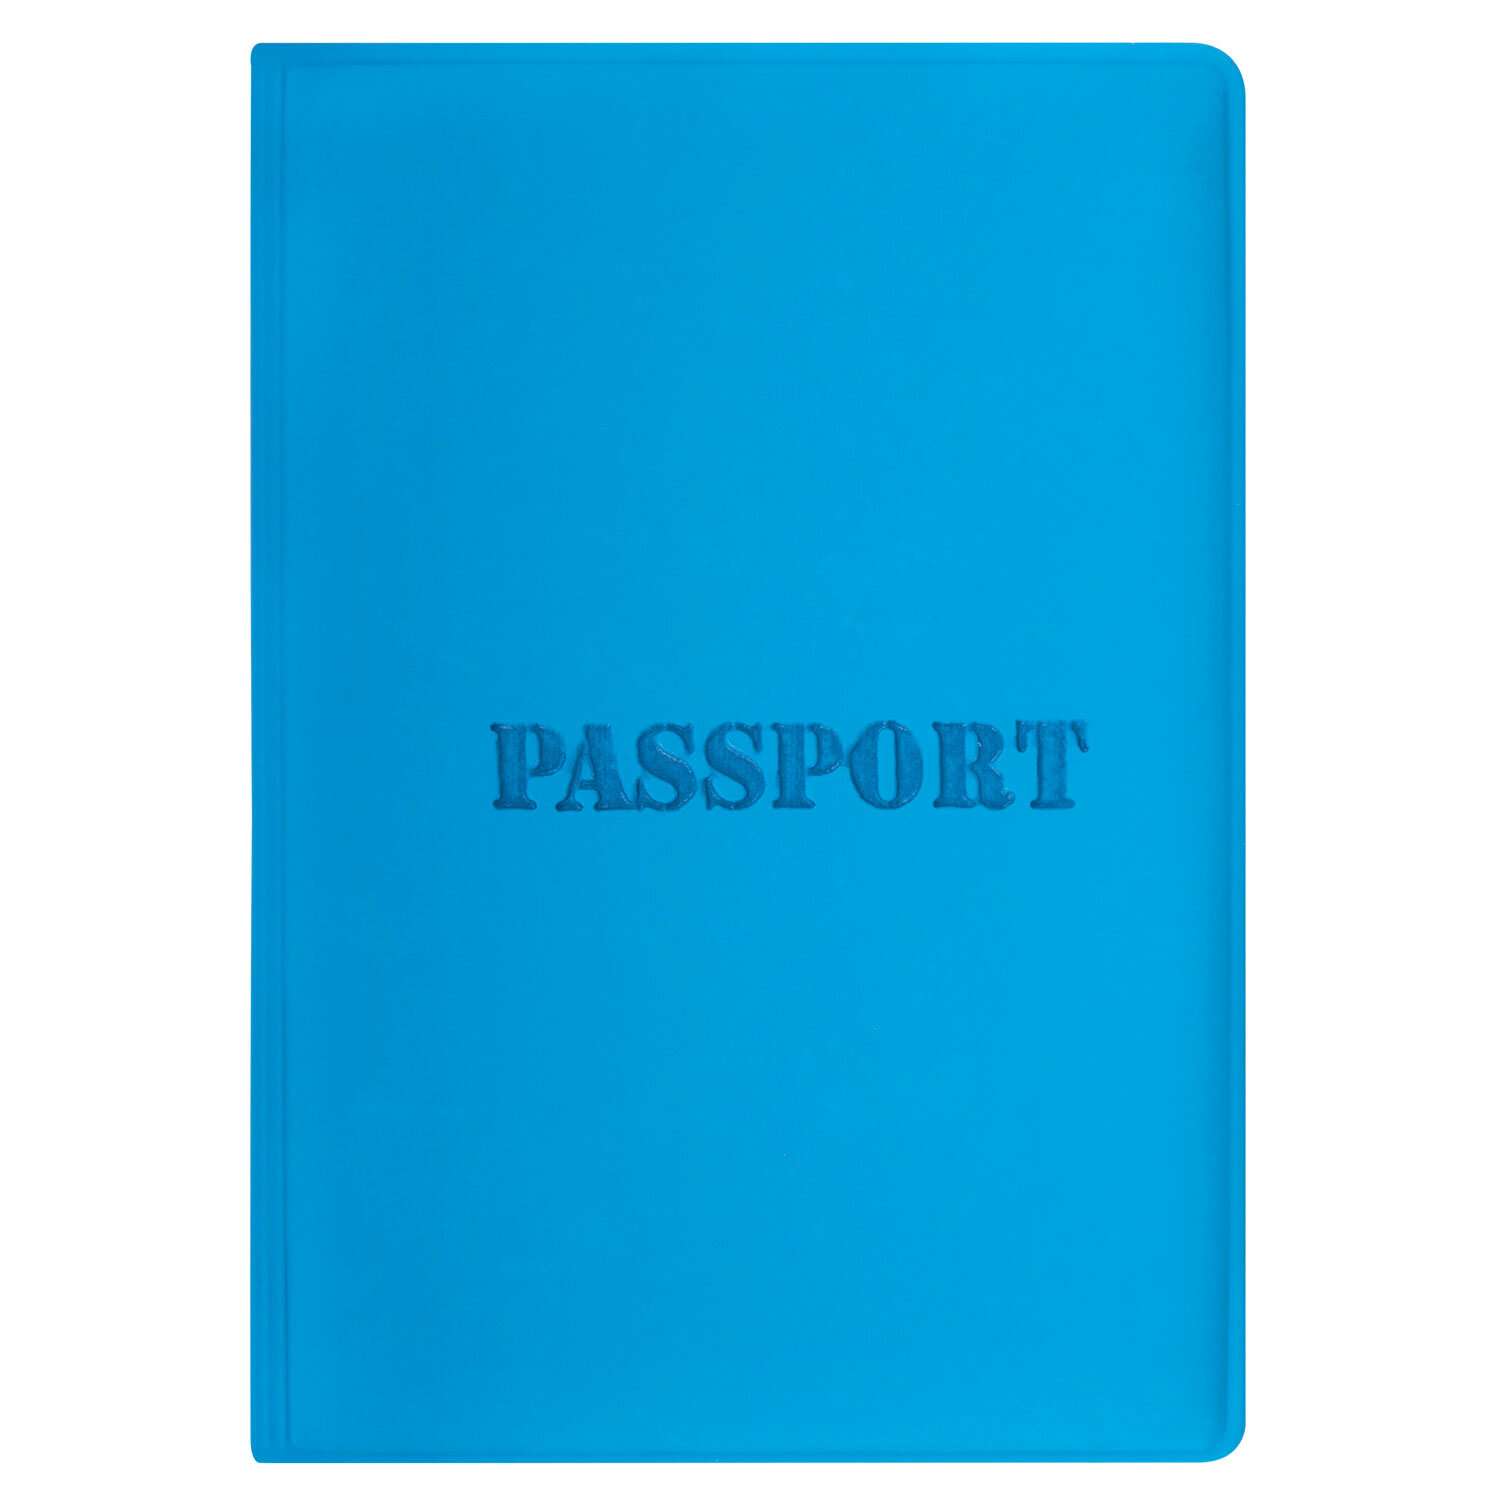 Обложка на паспорт Staff чехол - фото 3